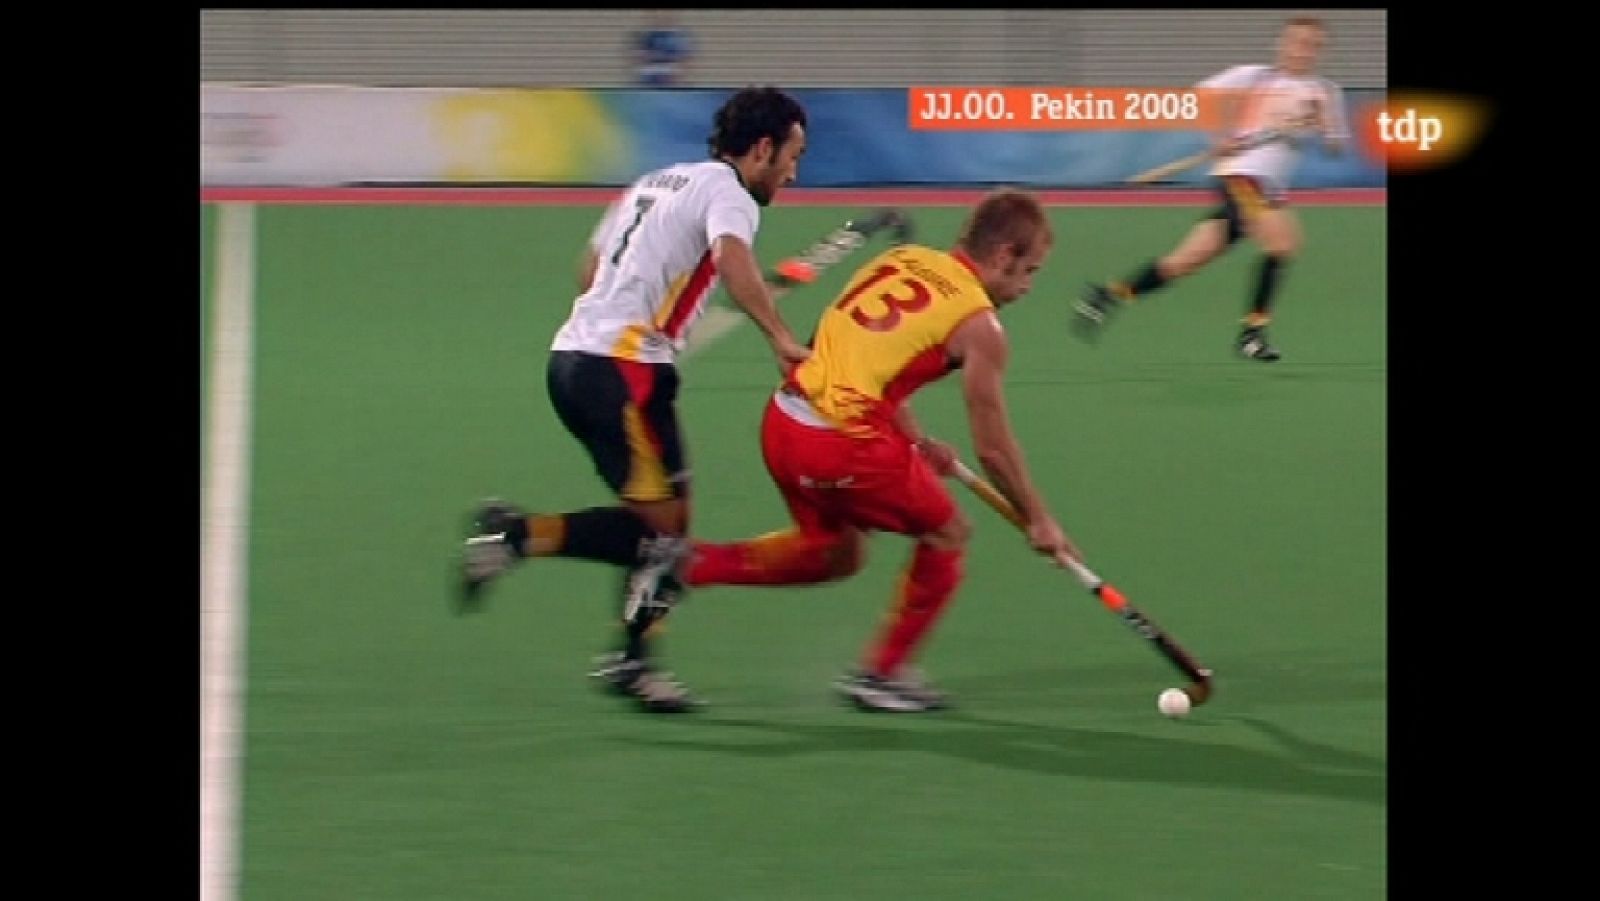 Londres en juego - Pekín 2008 - Hockey hierba. España-Alemania